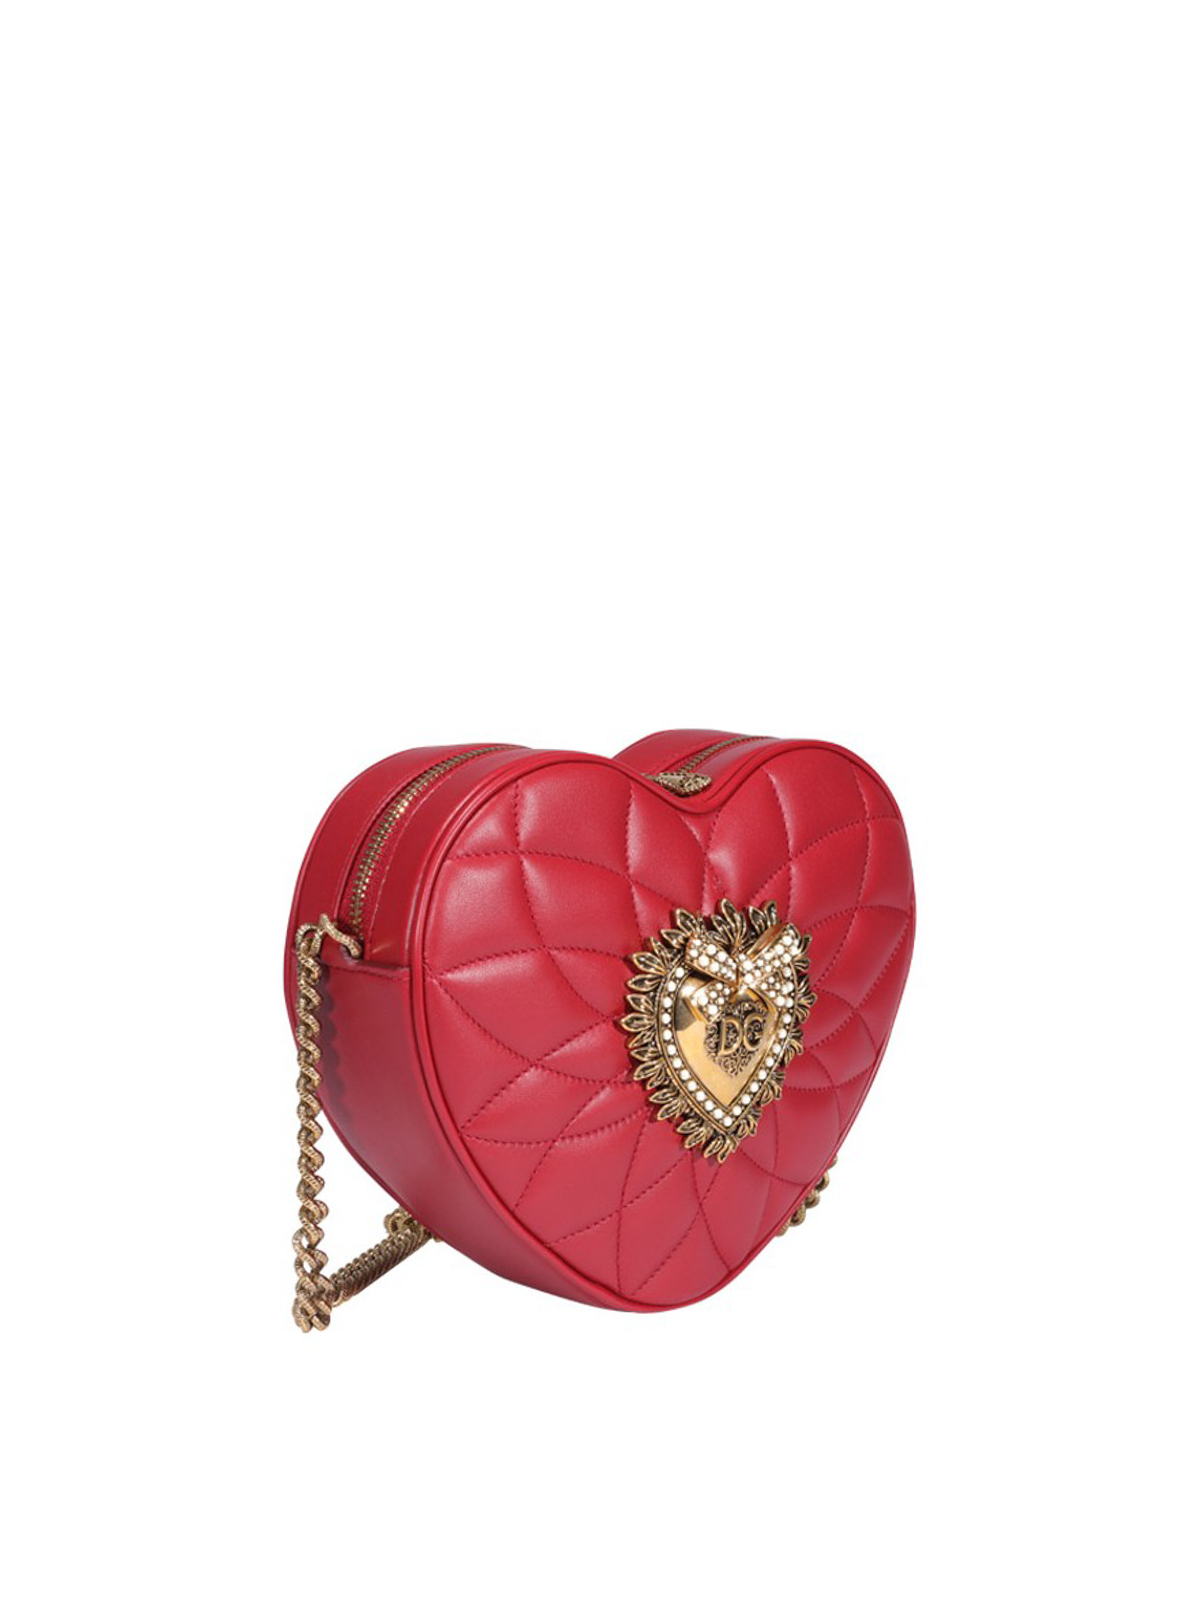 Cross body bags Dolce & Gabbana - Devotion heart-shaped leather bag -  BB6841AV96787124